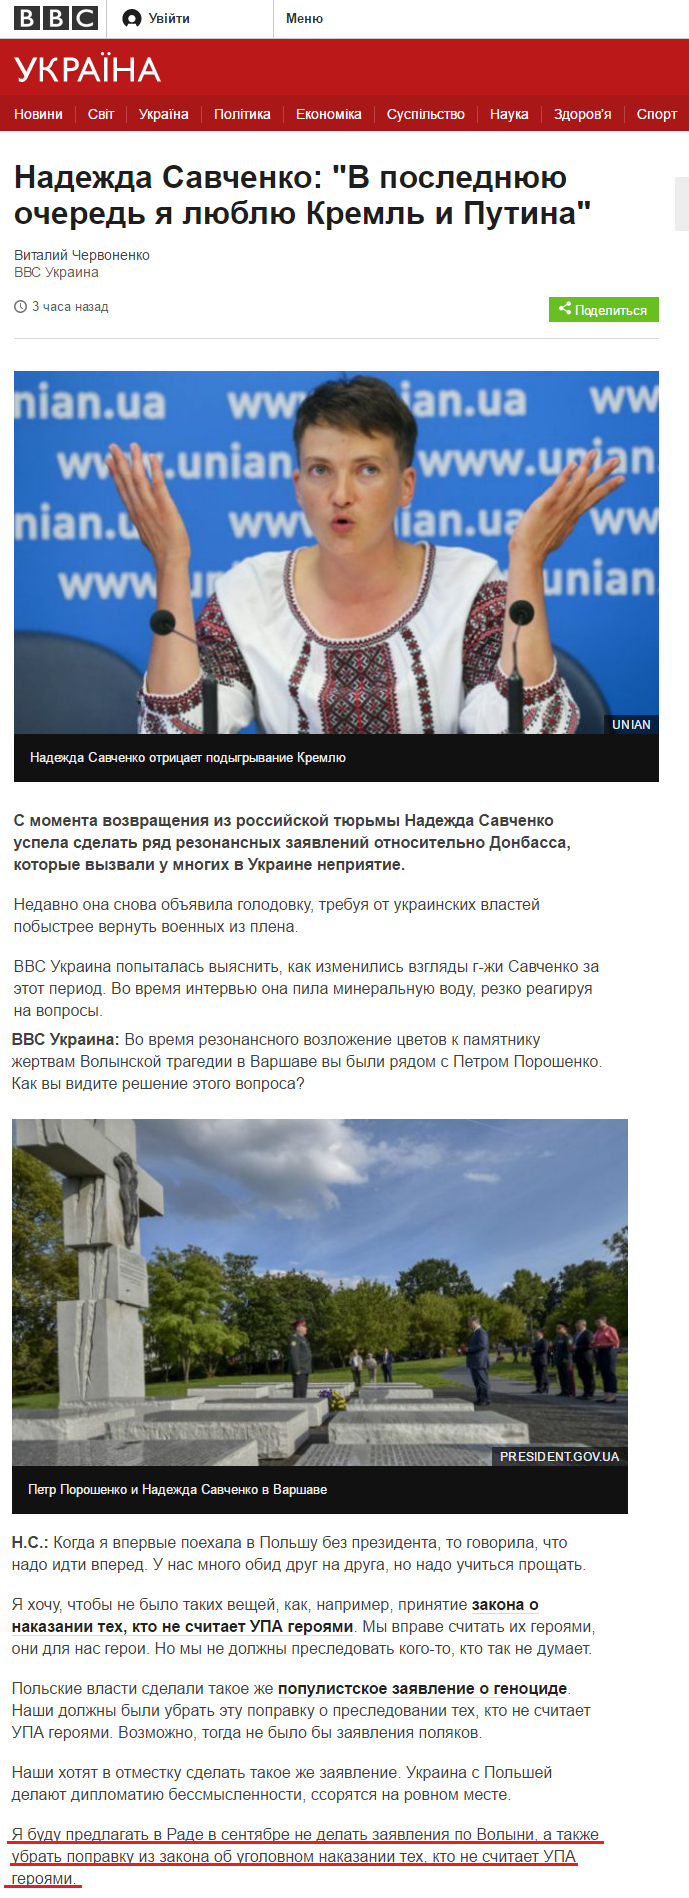 http://www.bbc.com/ukrainian/ukraine_in_russian/2016/08/160812_ru_s_nadya_savchenko